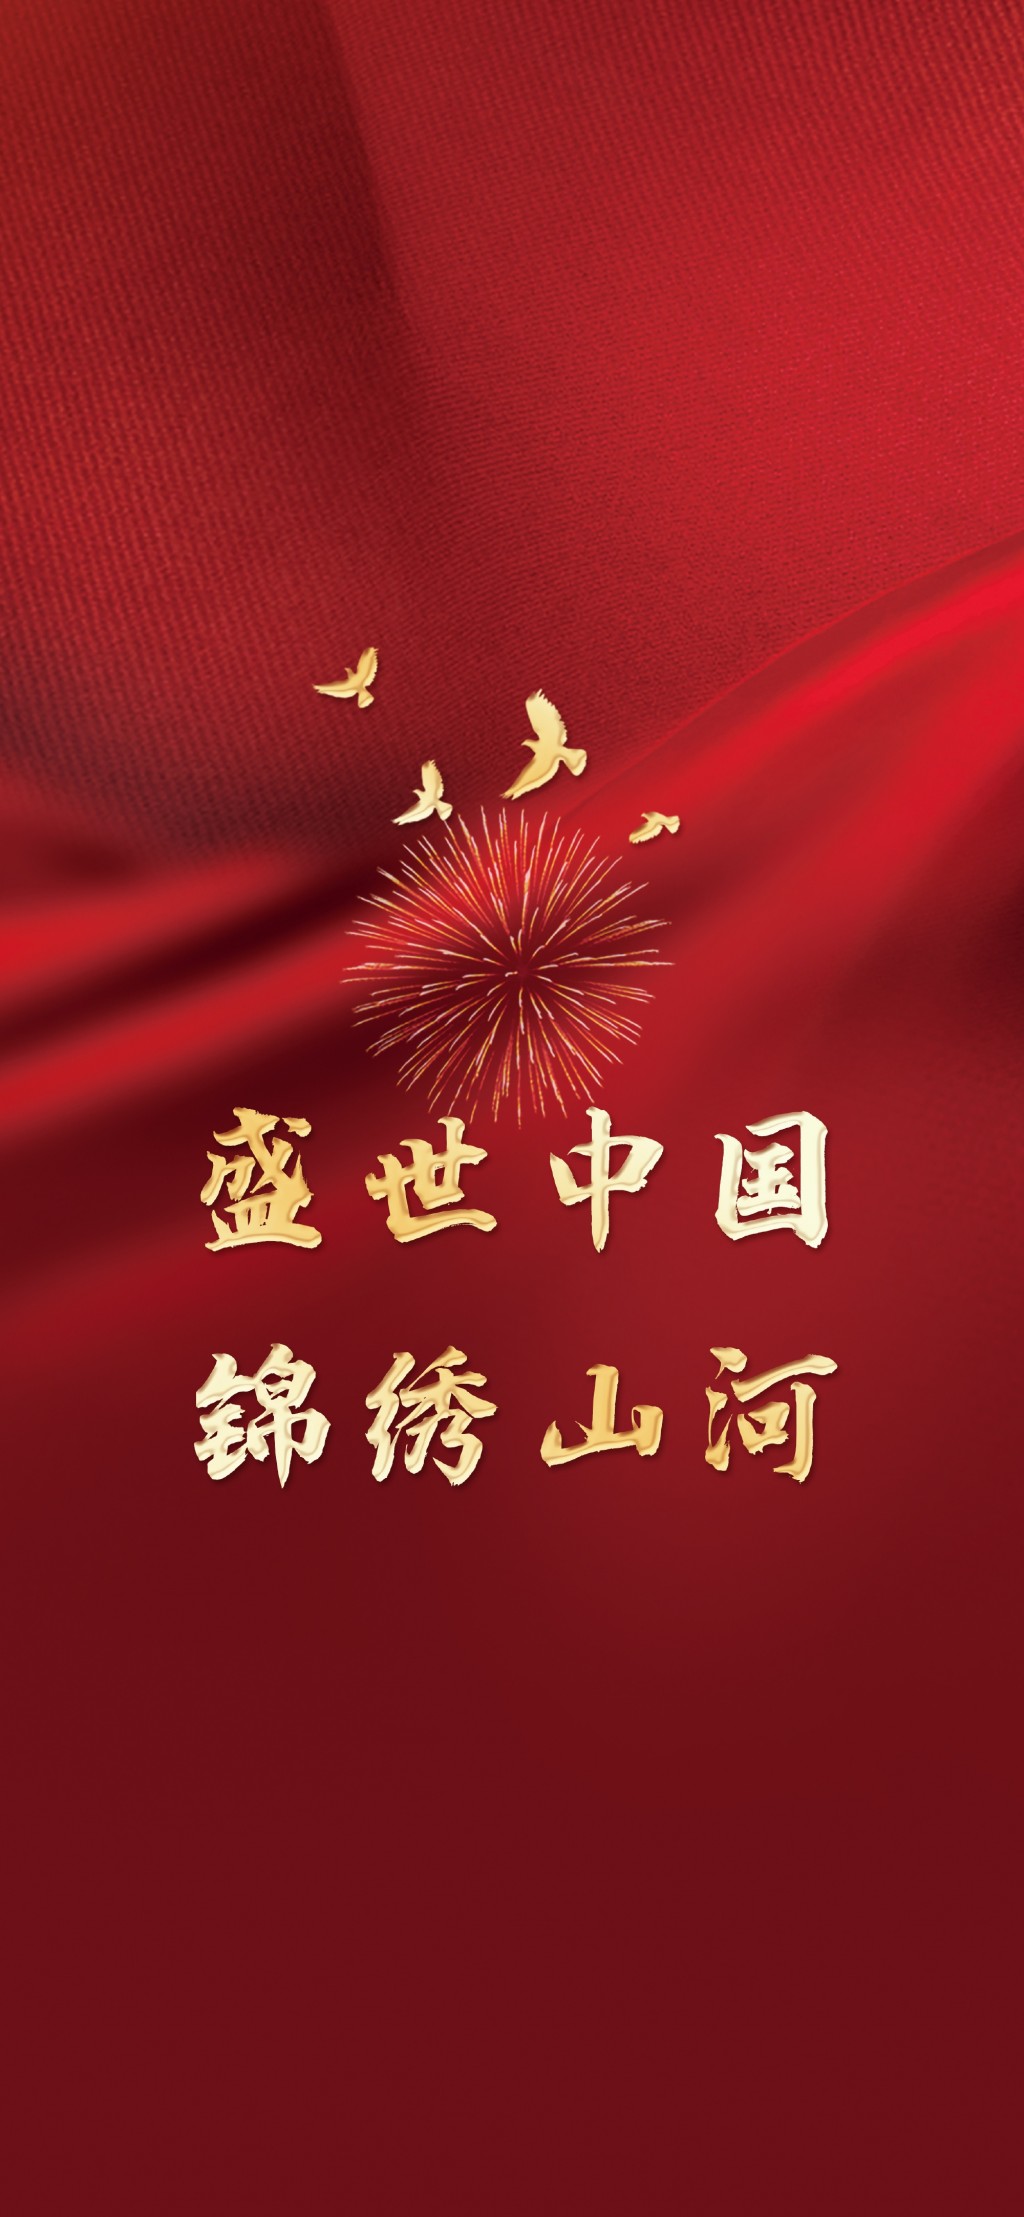 国庆节祝福祖国文字手机壁纸